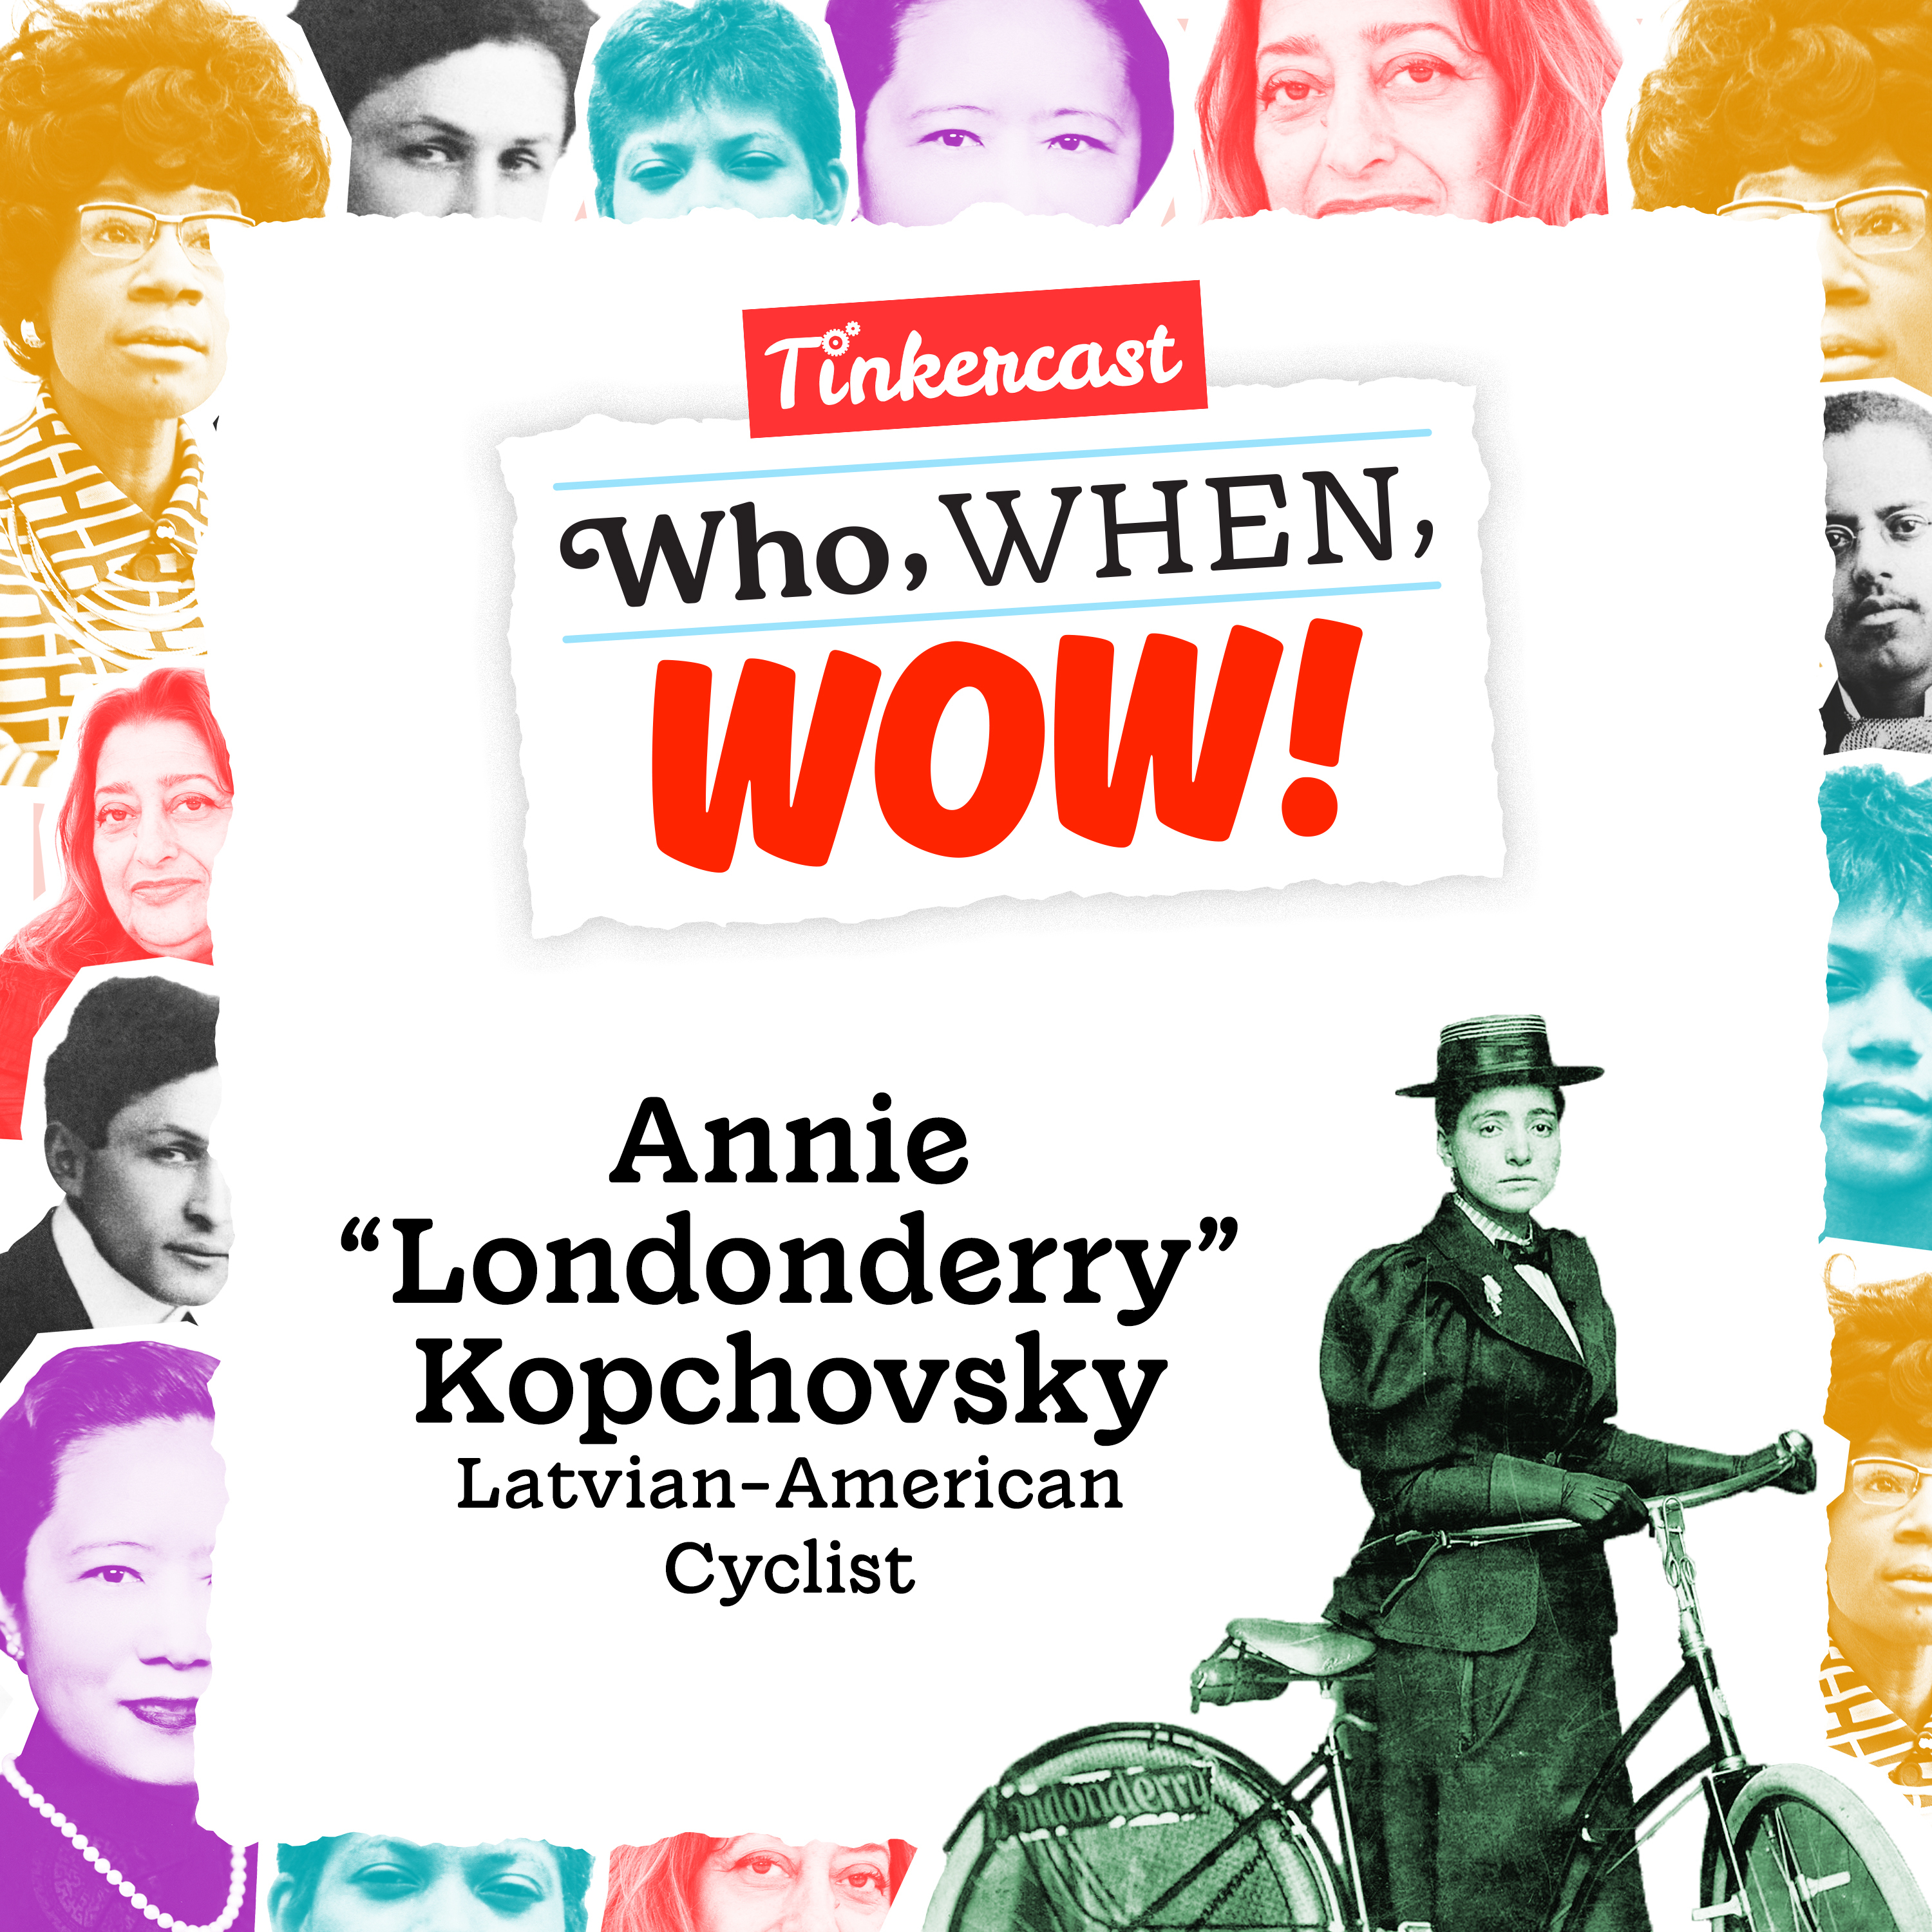 Annie “Londonderry” Kopchovsky: Cyclist